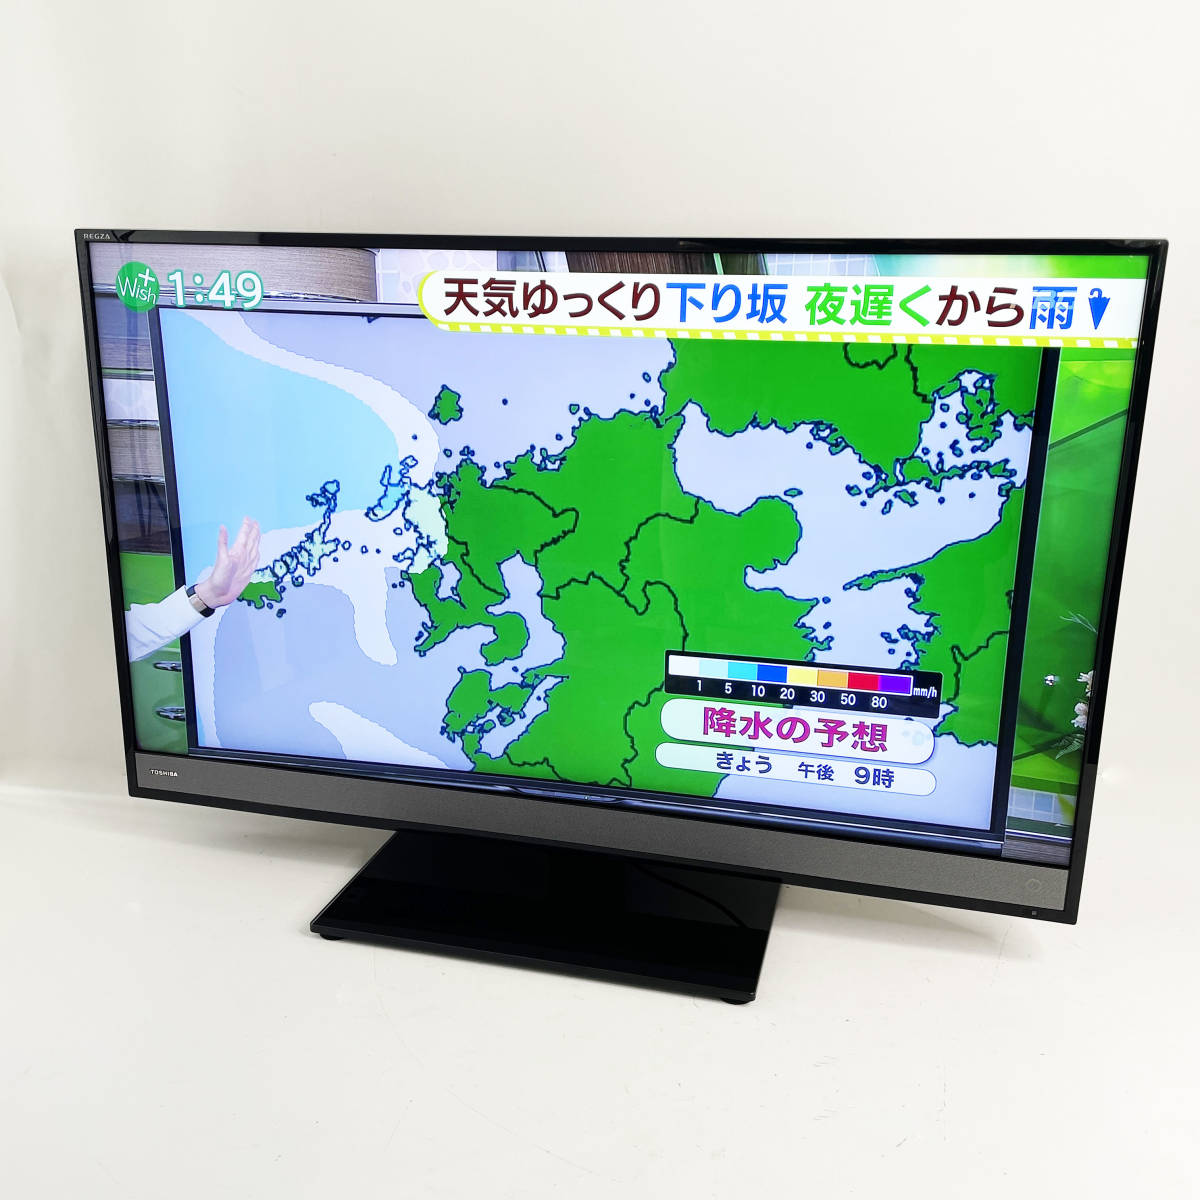 東芝 TOSHIBA REGZA 40M510X テレビ テレビ/映像機器 家電・スマホ